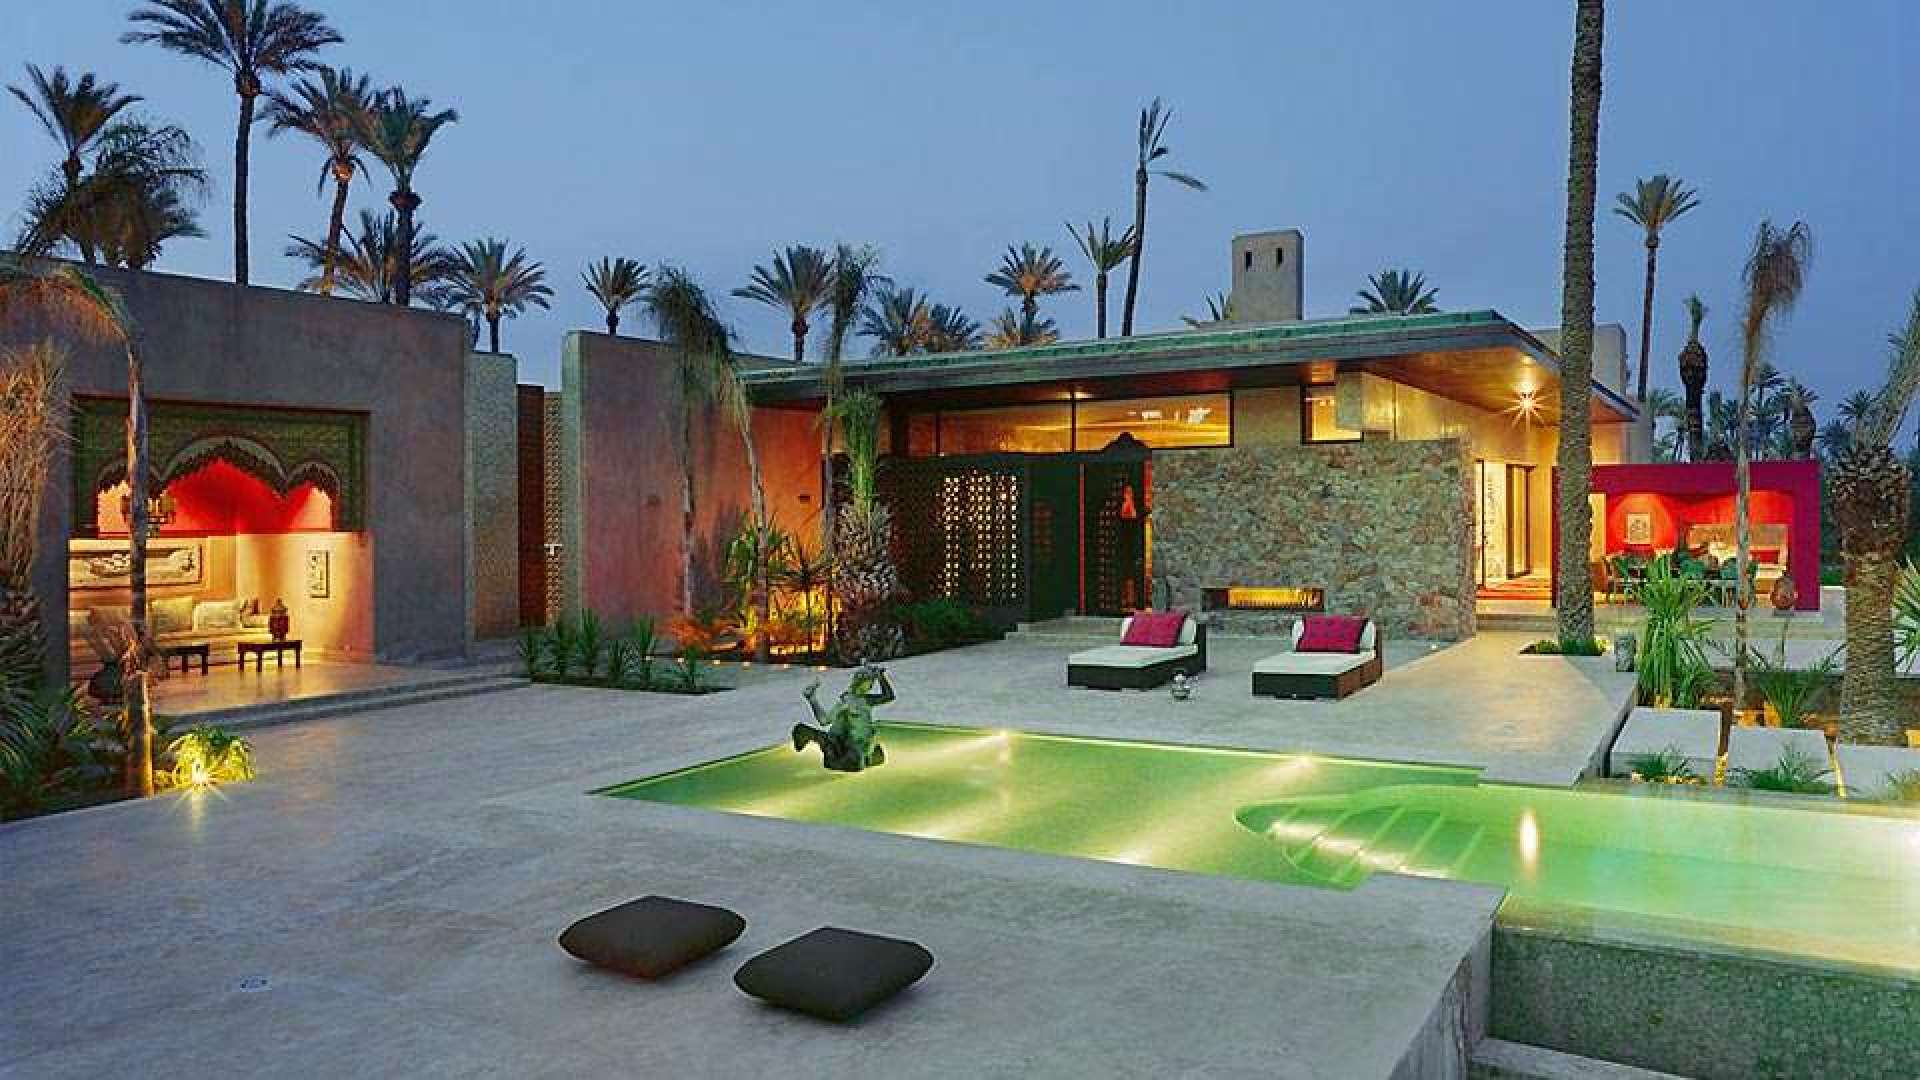 Location de vacances,Villa,PROPRIETE DE LUXE À MARRAKECH,Marrakech,Palmeraie